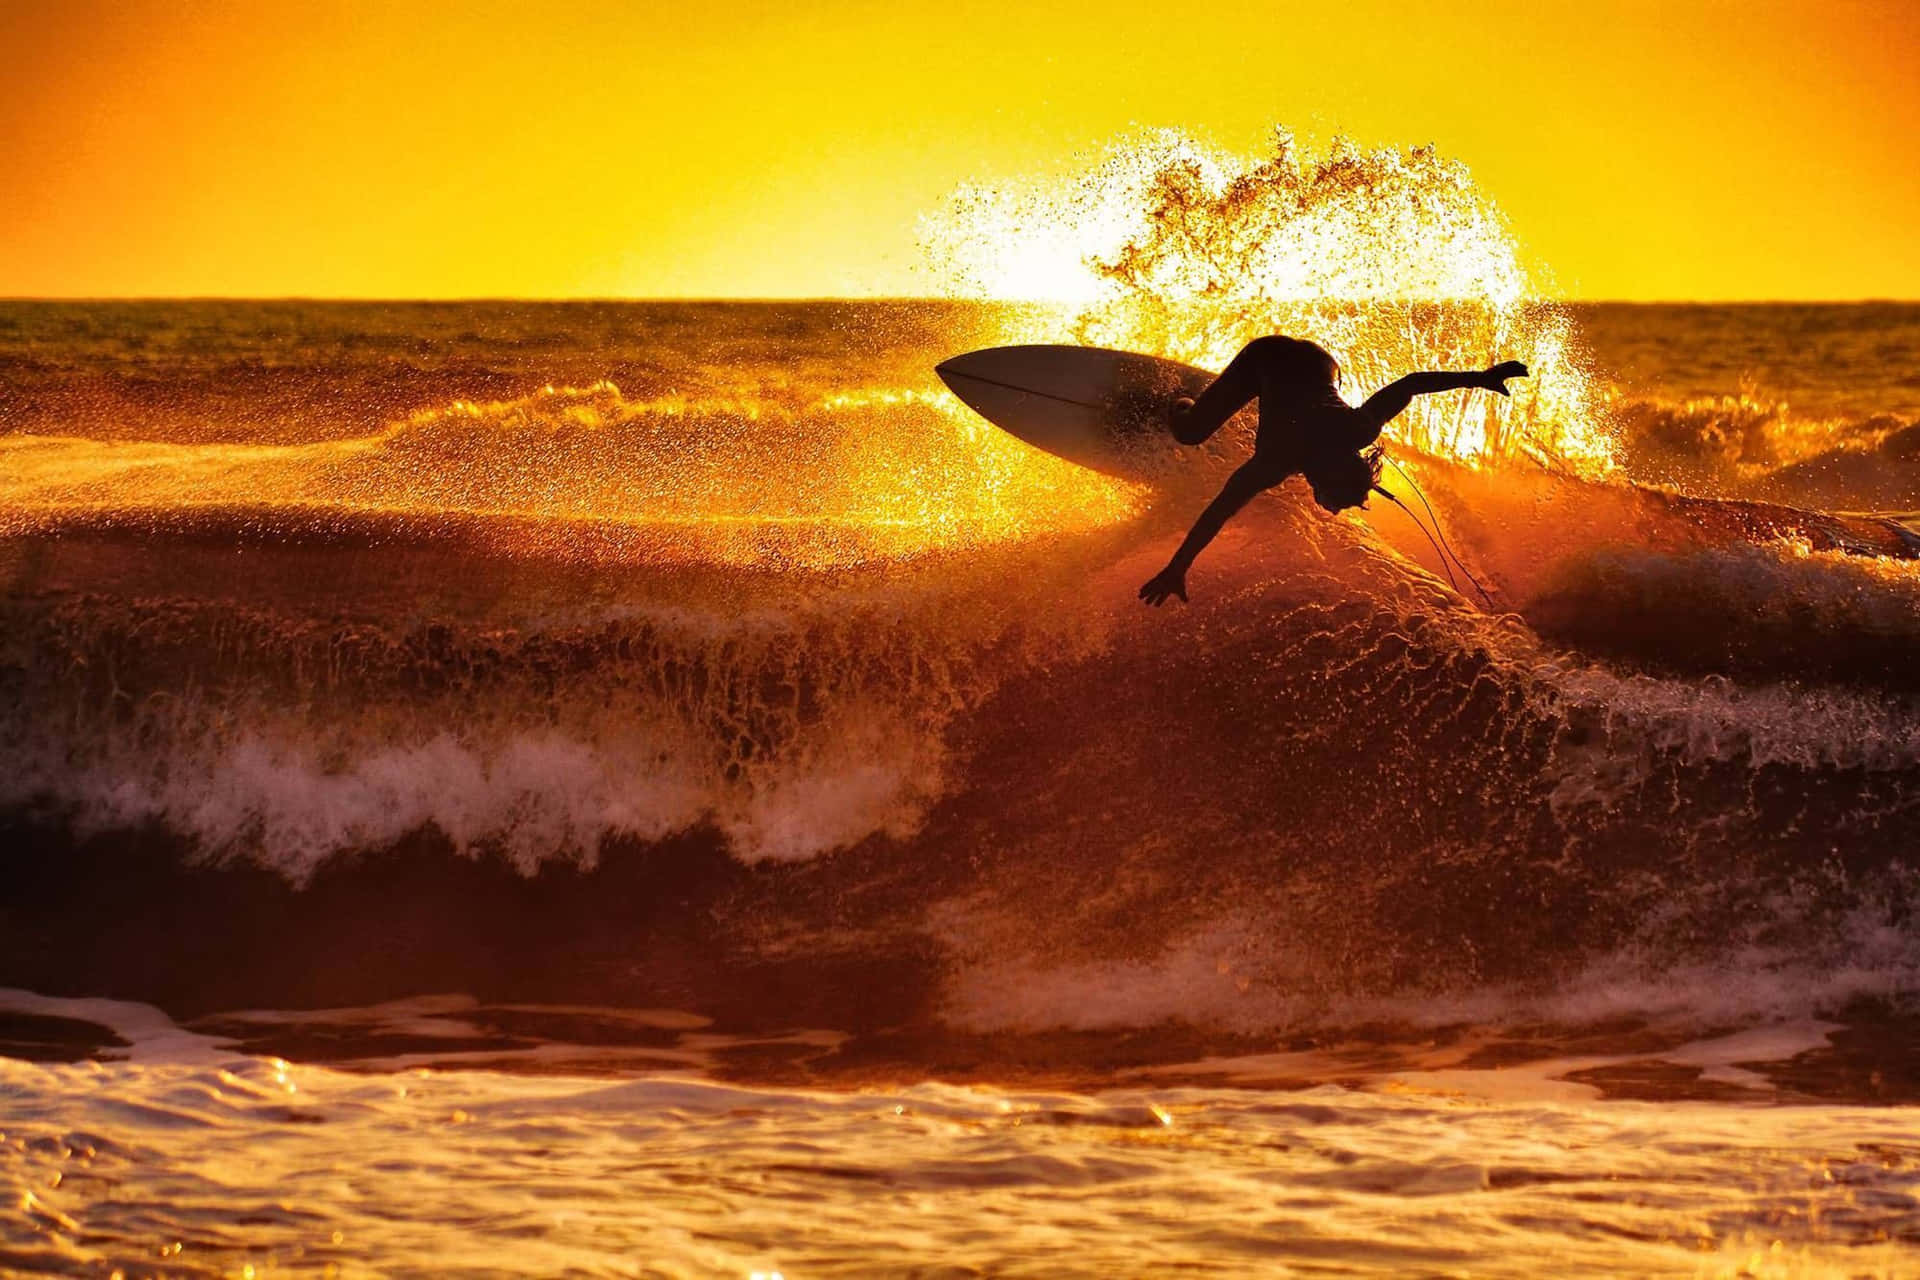 Immaginecon Uno Sfondo Di Un Surfer Che Esegue Una Fantastica Manovra Al Tramonto Sulla Spiaggia.